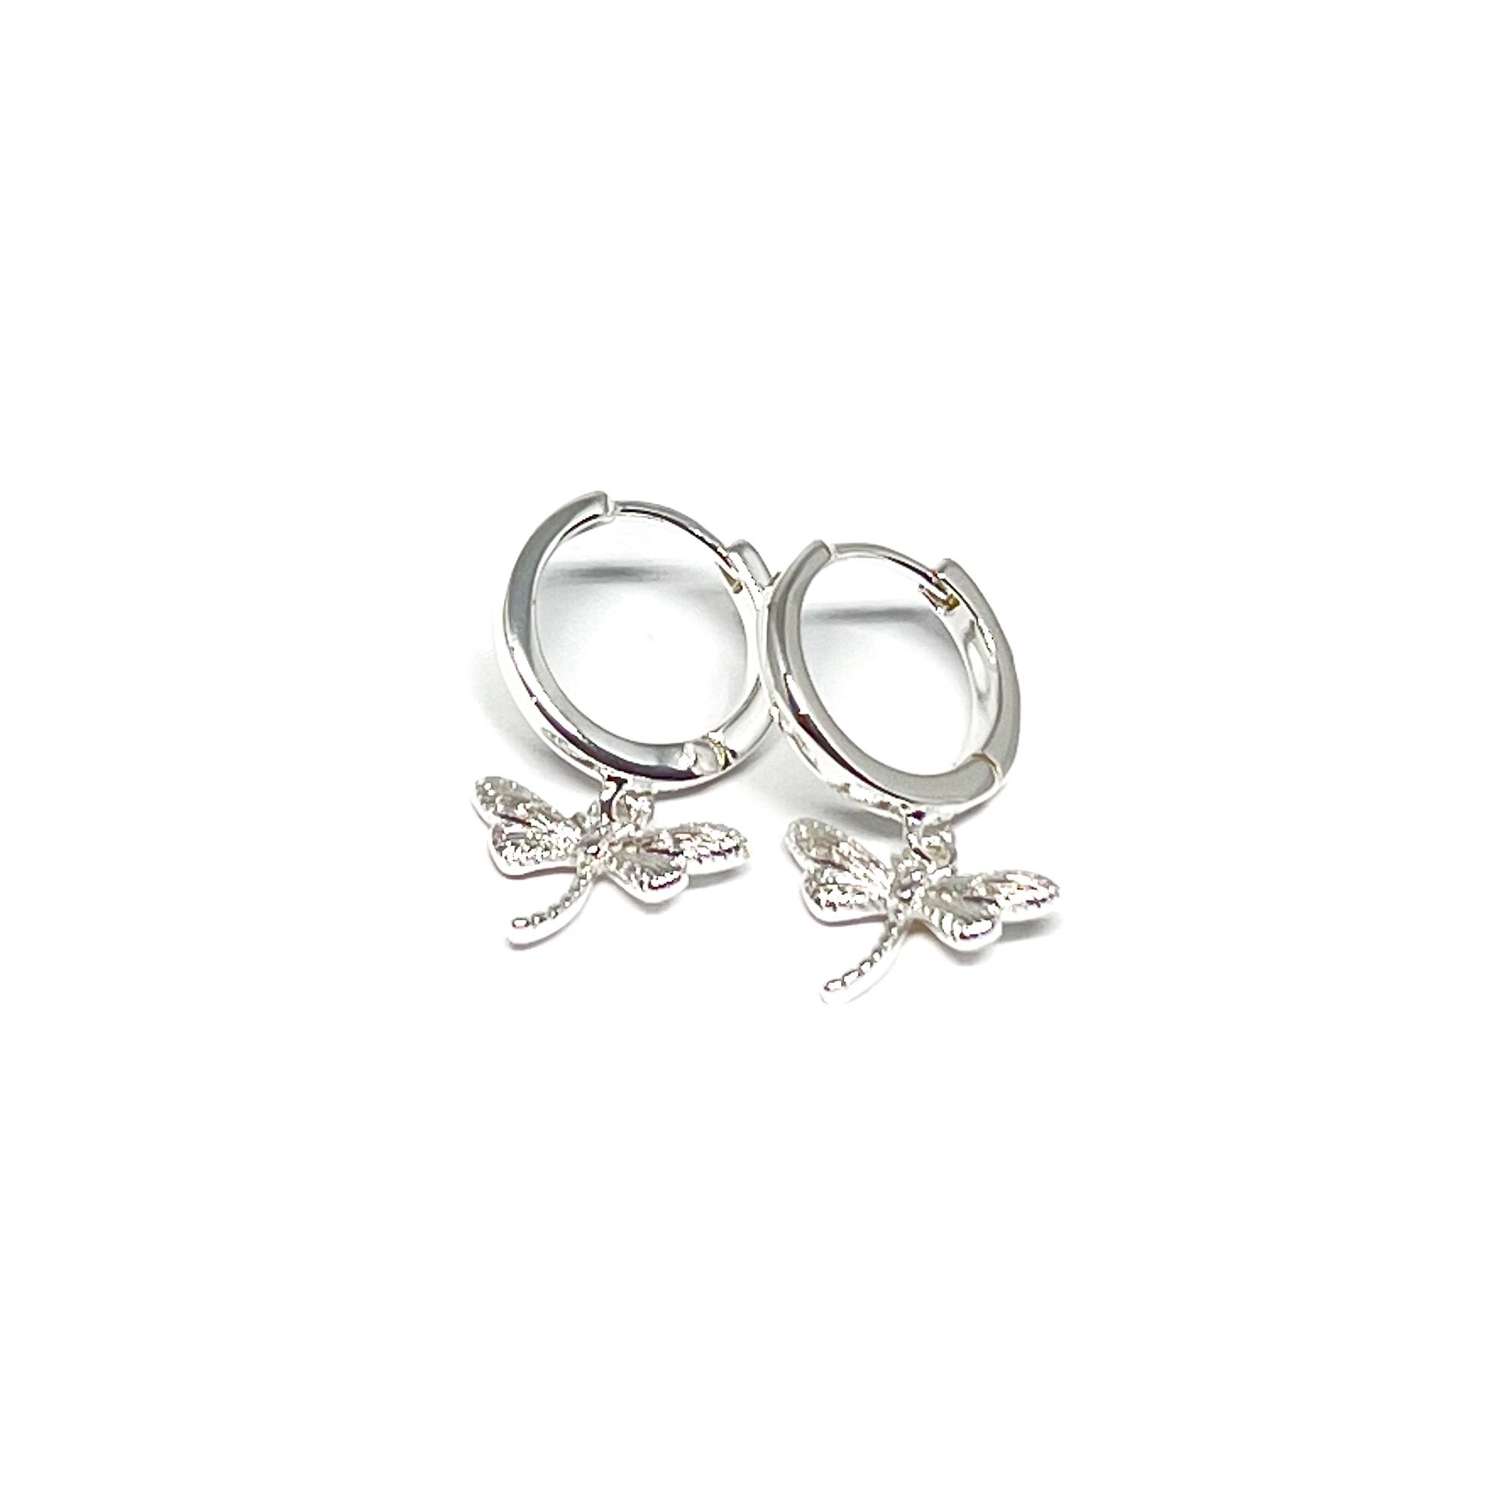 Sierra Dragonfly Earrings - Silver